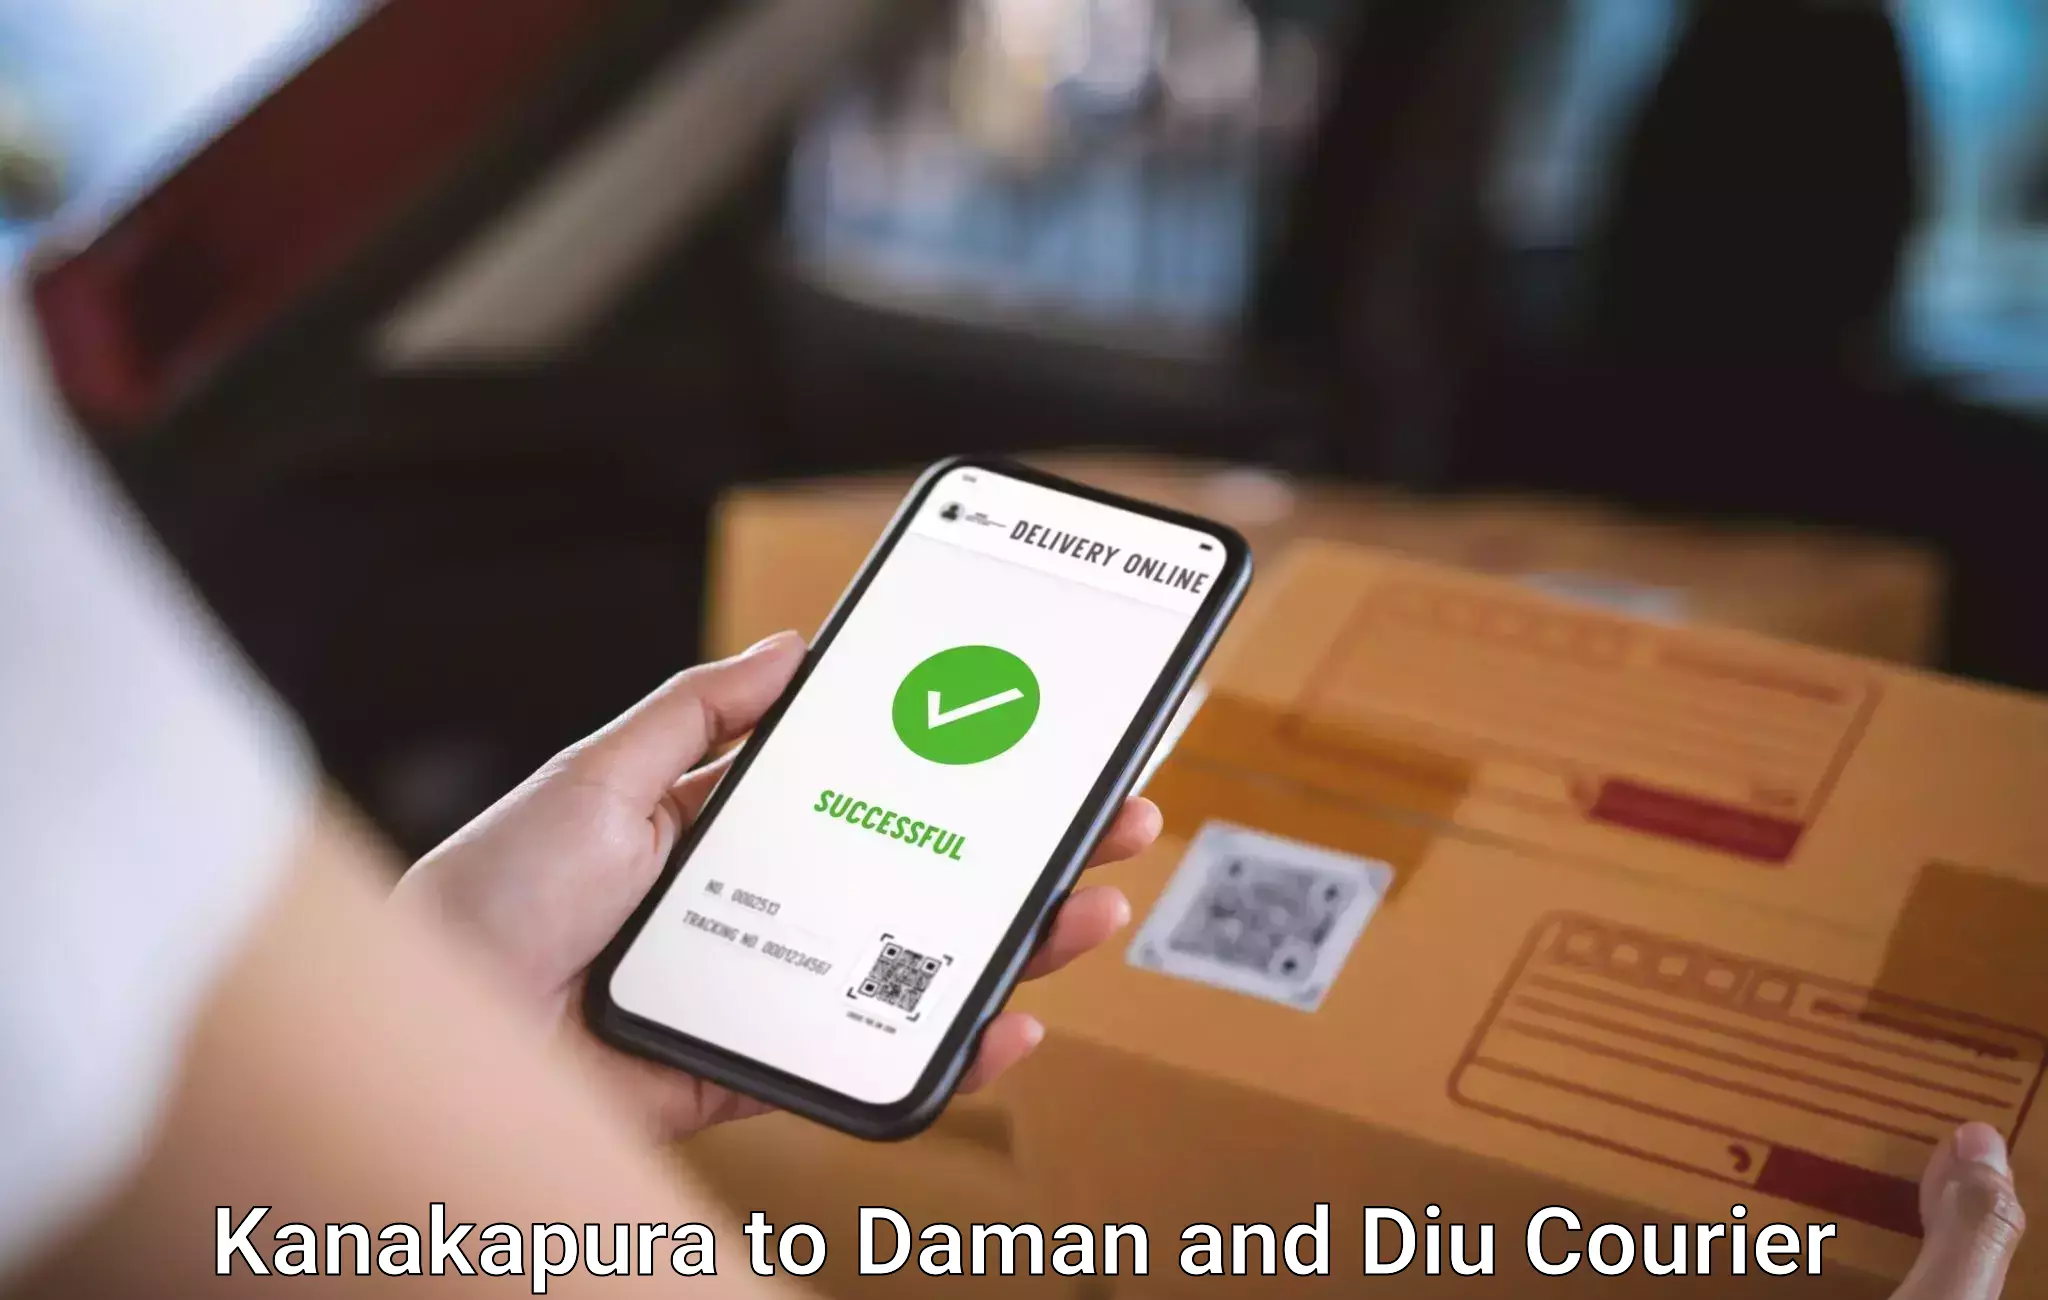 Baggage courier FAQs Kanakapura to Diu